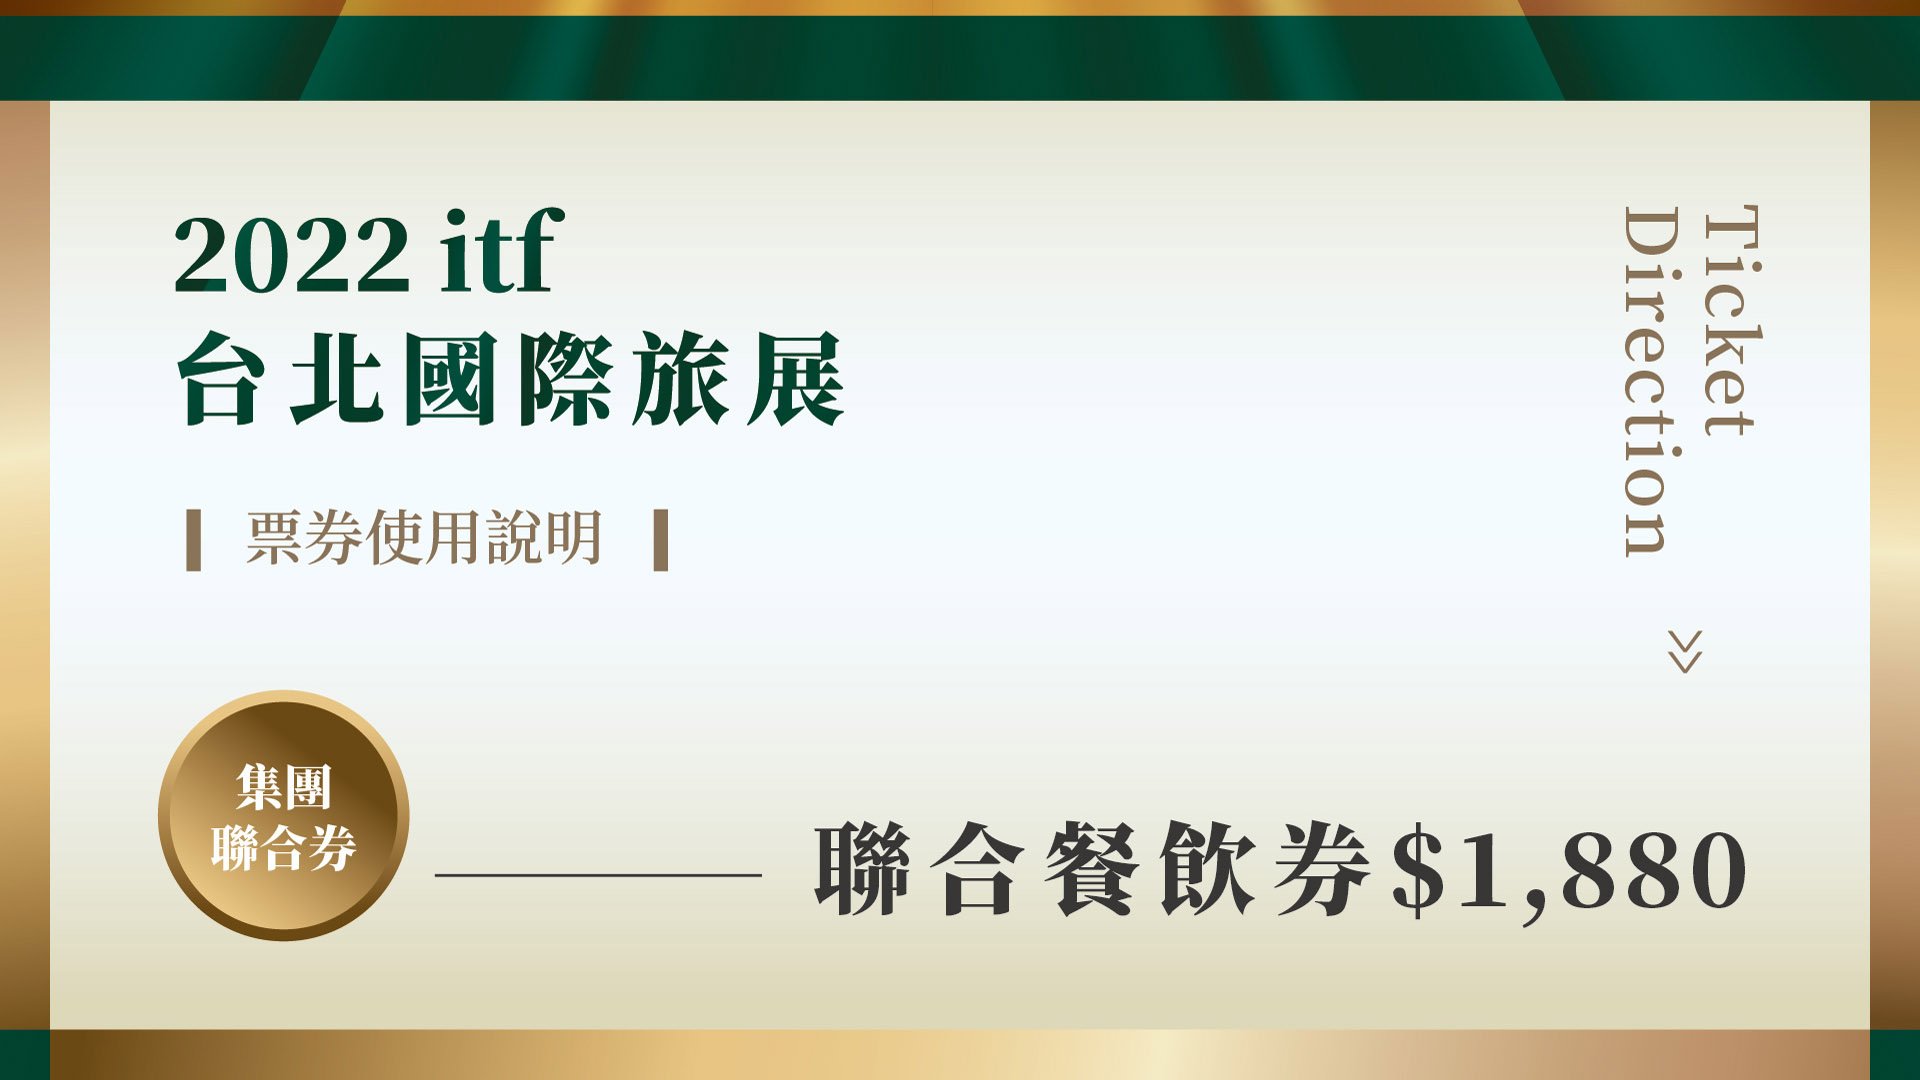 📍聯合餐飲券(每張$1,880)📍2022ITF台北國際旅展(贈送券效期至2023/05/31)